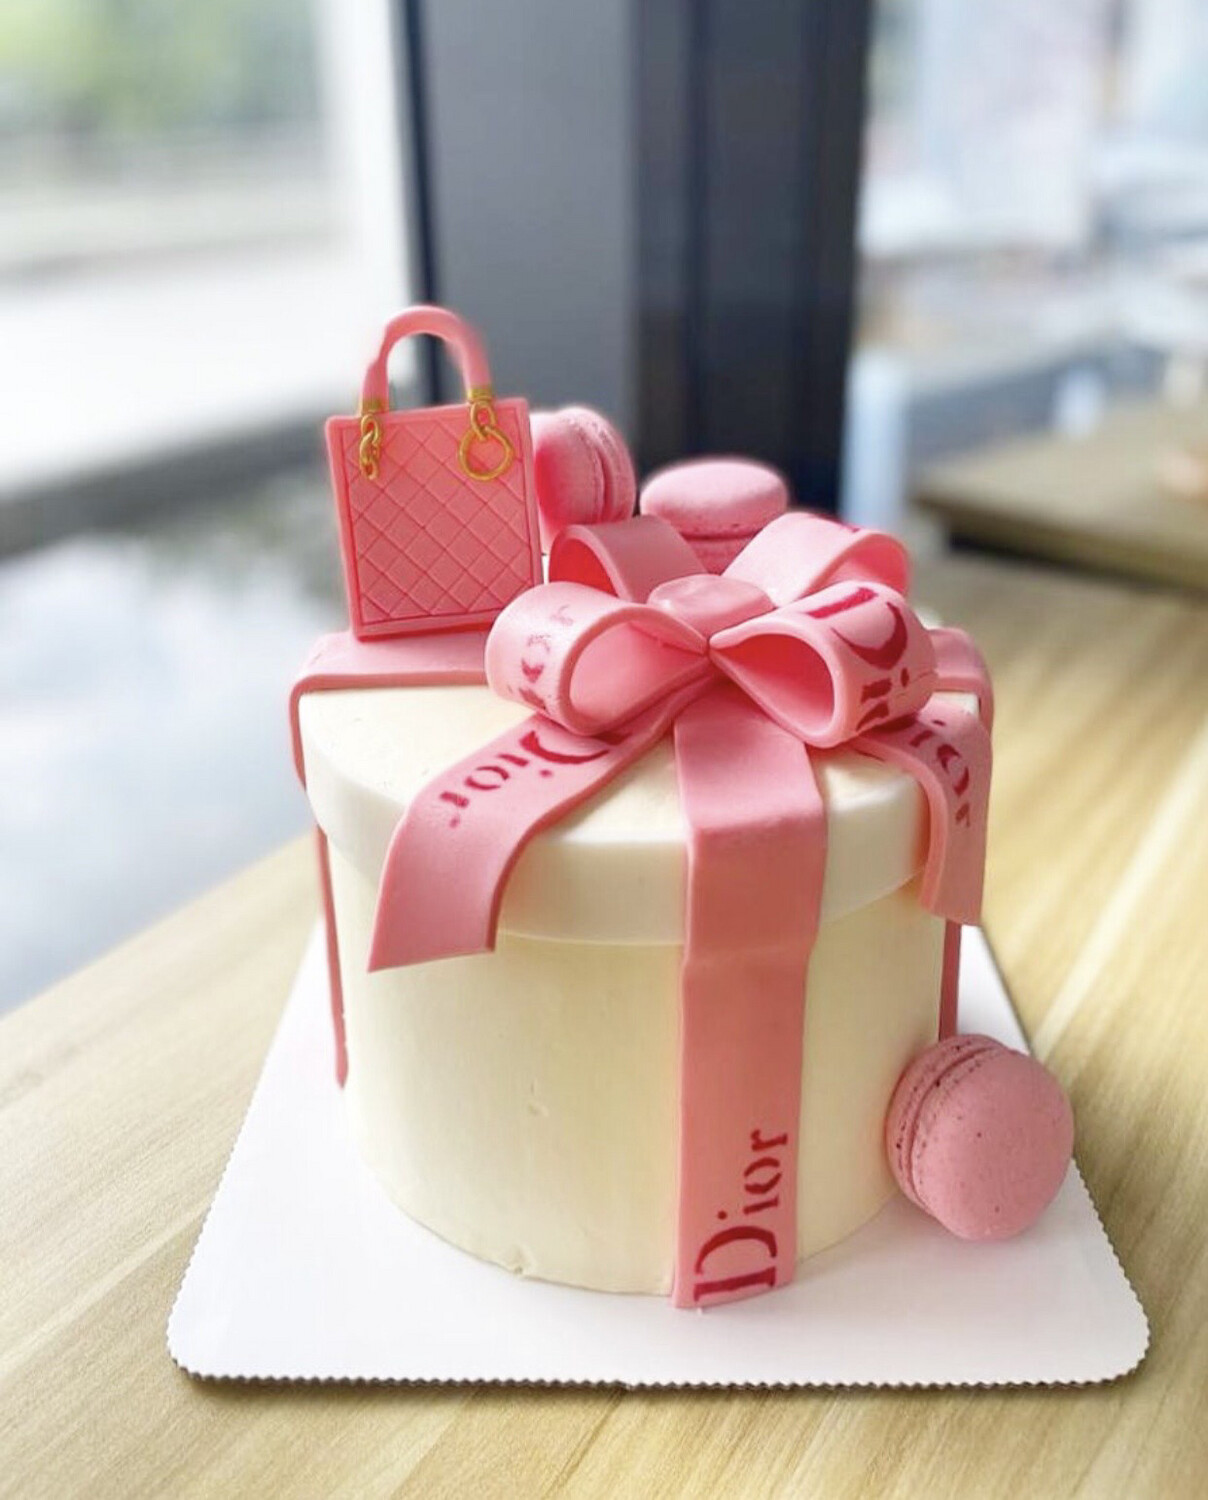 Dior Bag Cake